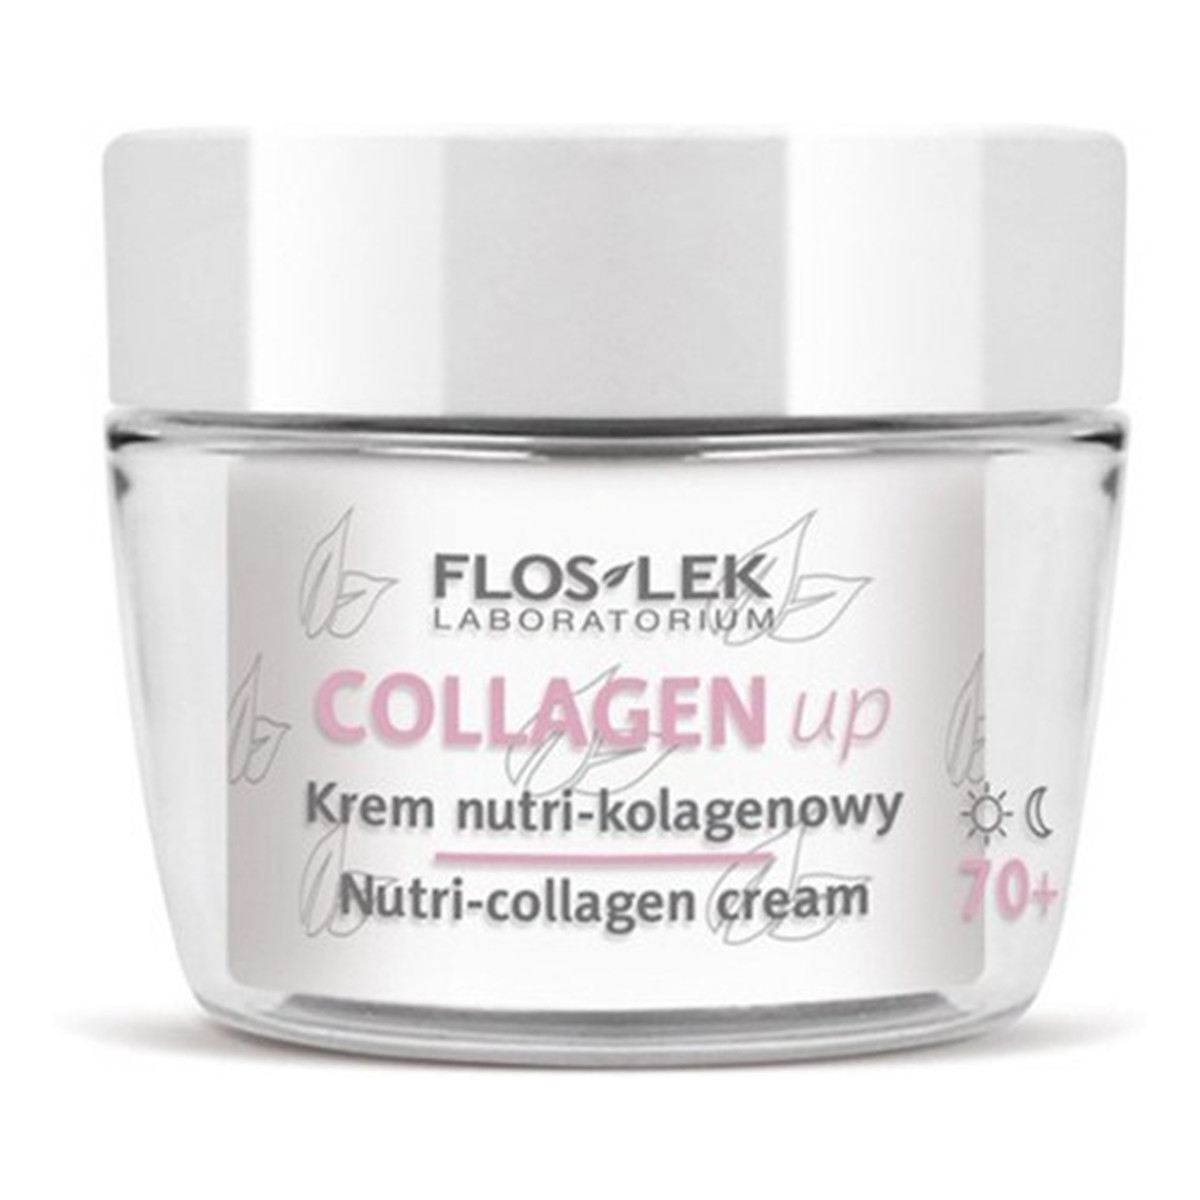 FlosLek Collagen Up Krem nutri kolagenowy na dzień i noc 70+ 50ml